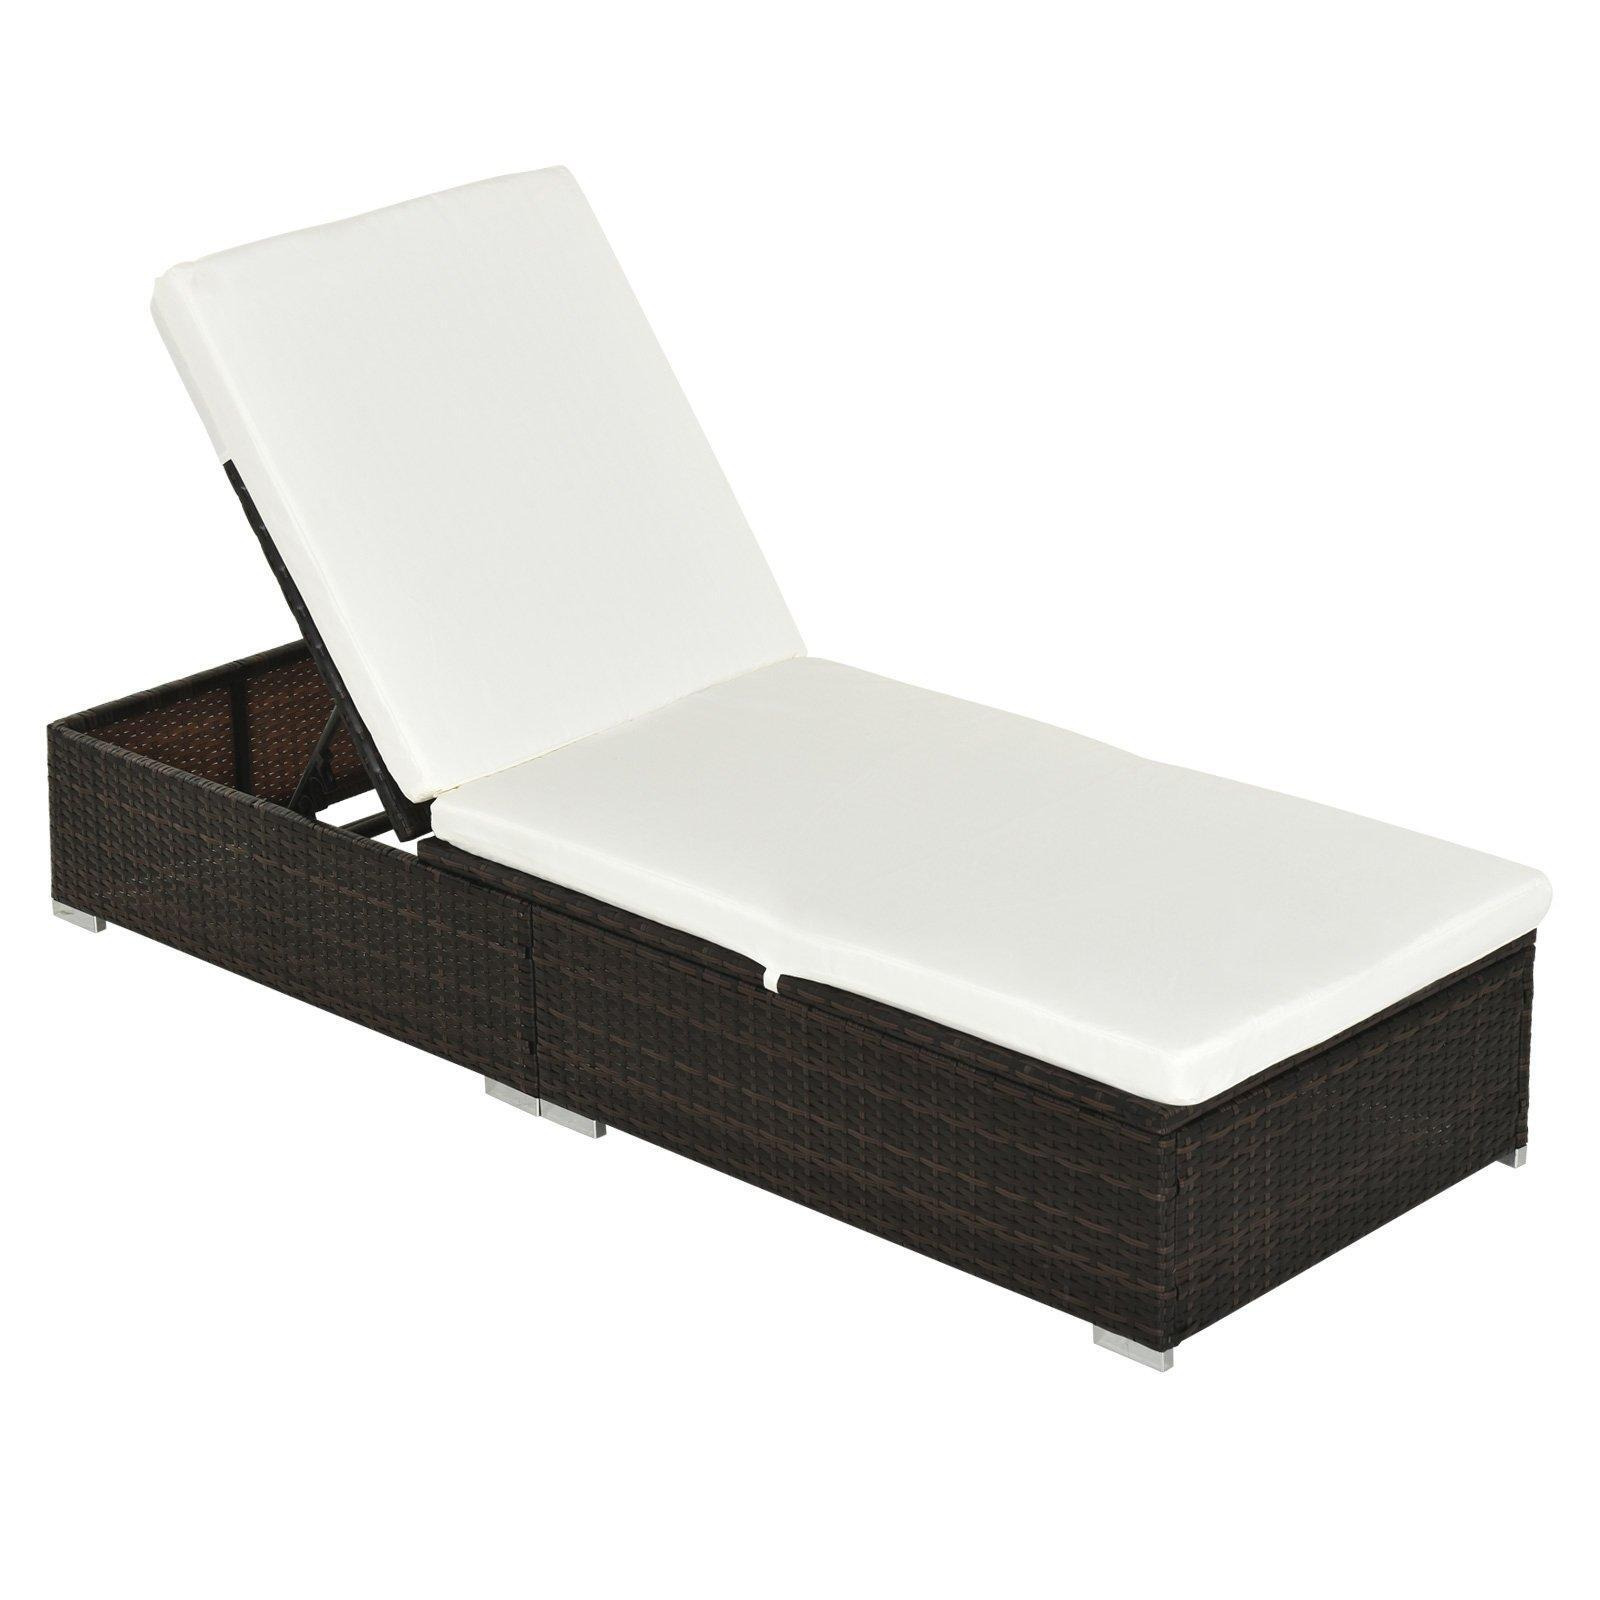 Garden Rattan Recliner Lounger Furniture Sun Lounger Recliner Bed Chair - image 1